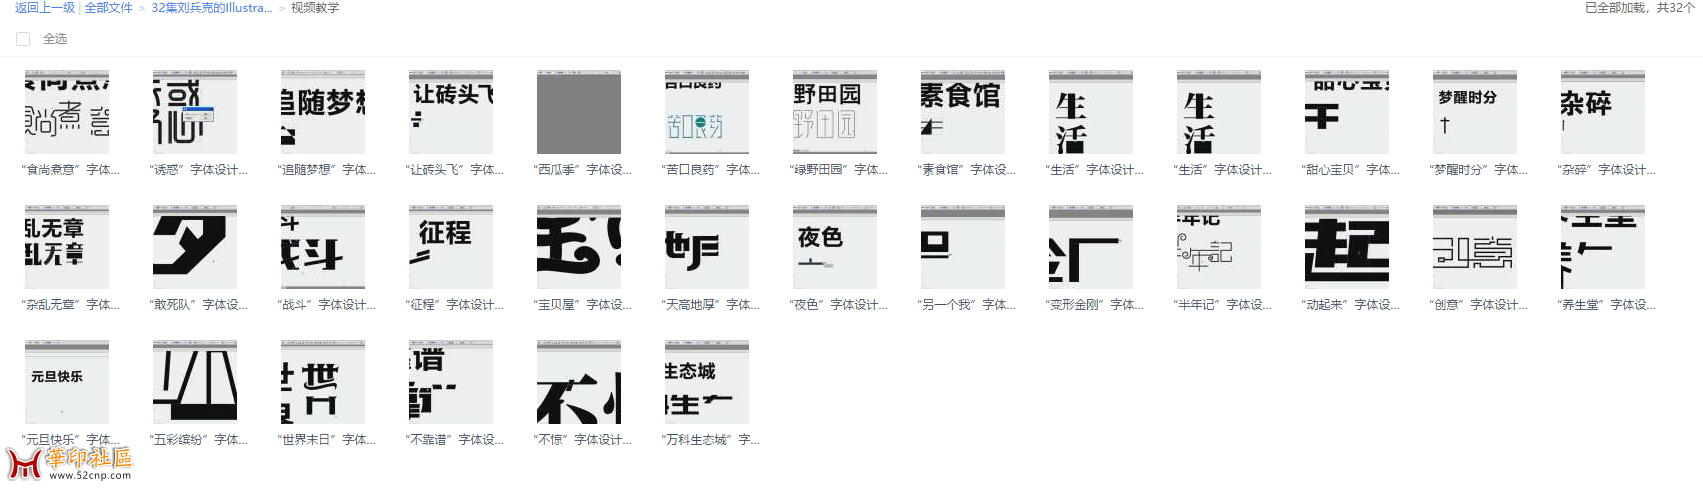 32集刘兵克的Illustrator字体设计日记实战视频➕高高手6课{tag}(3)